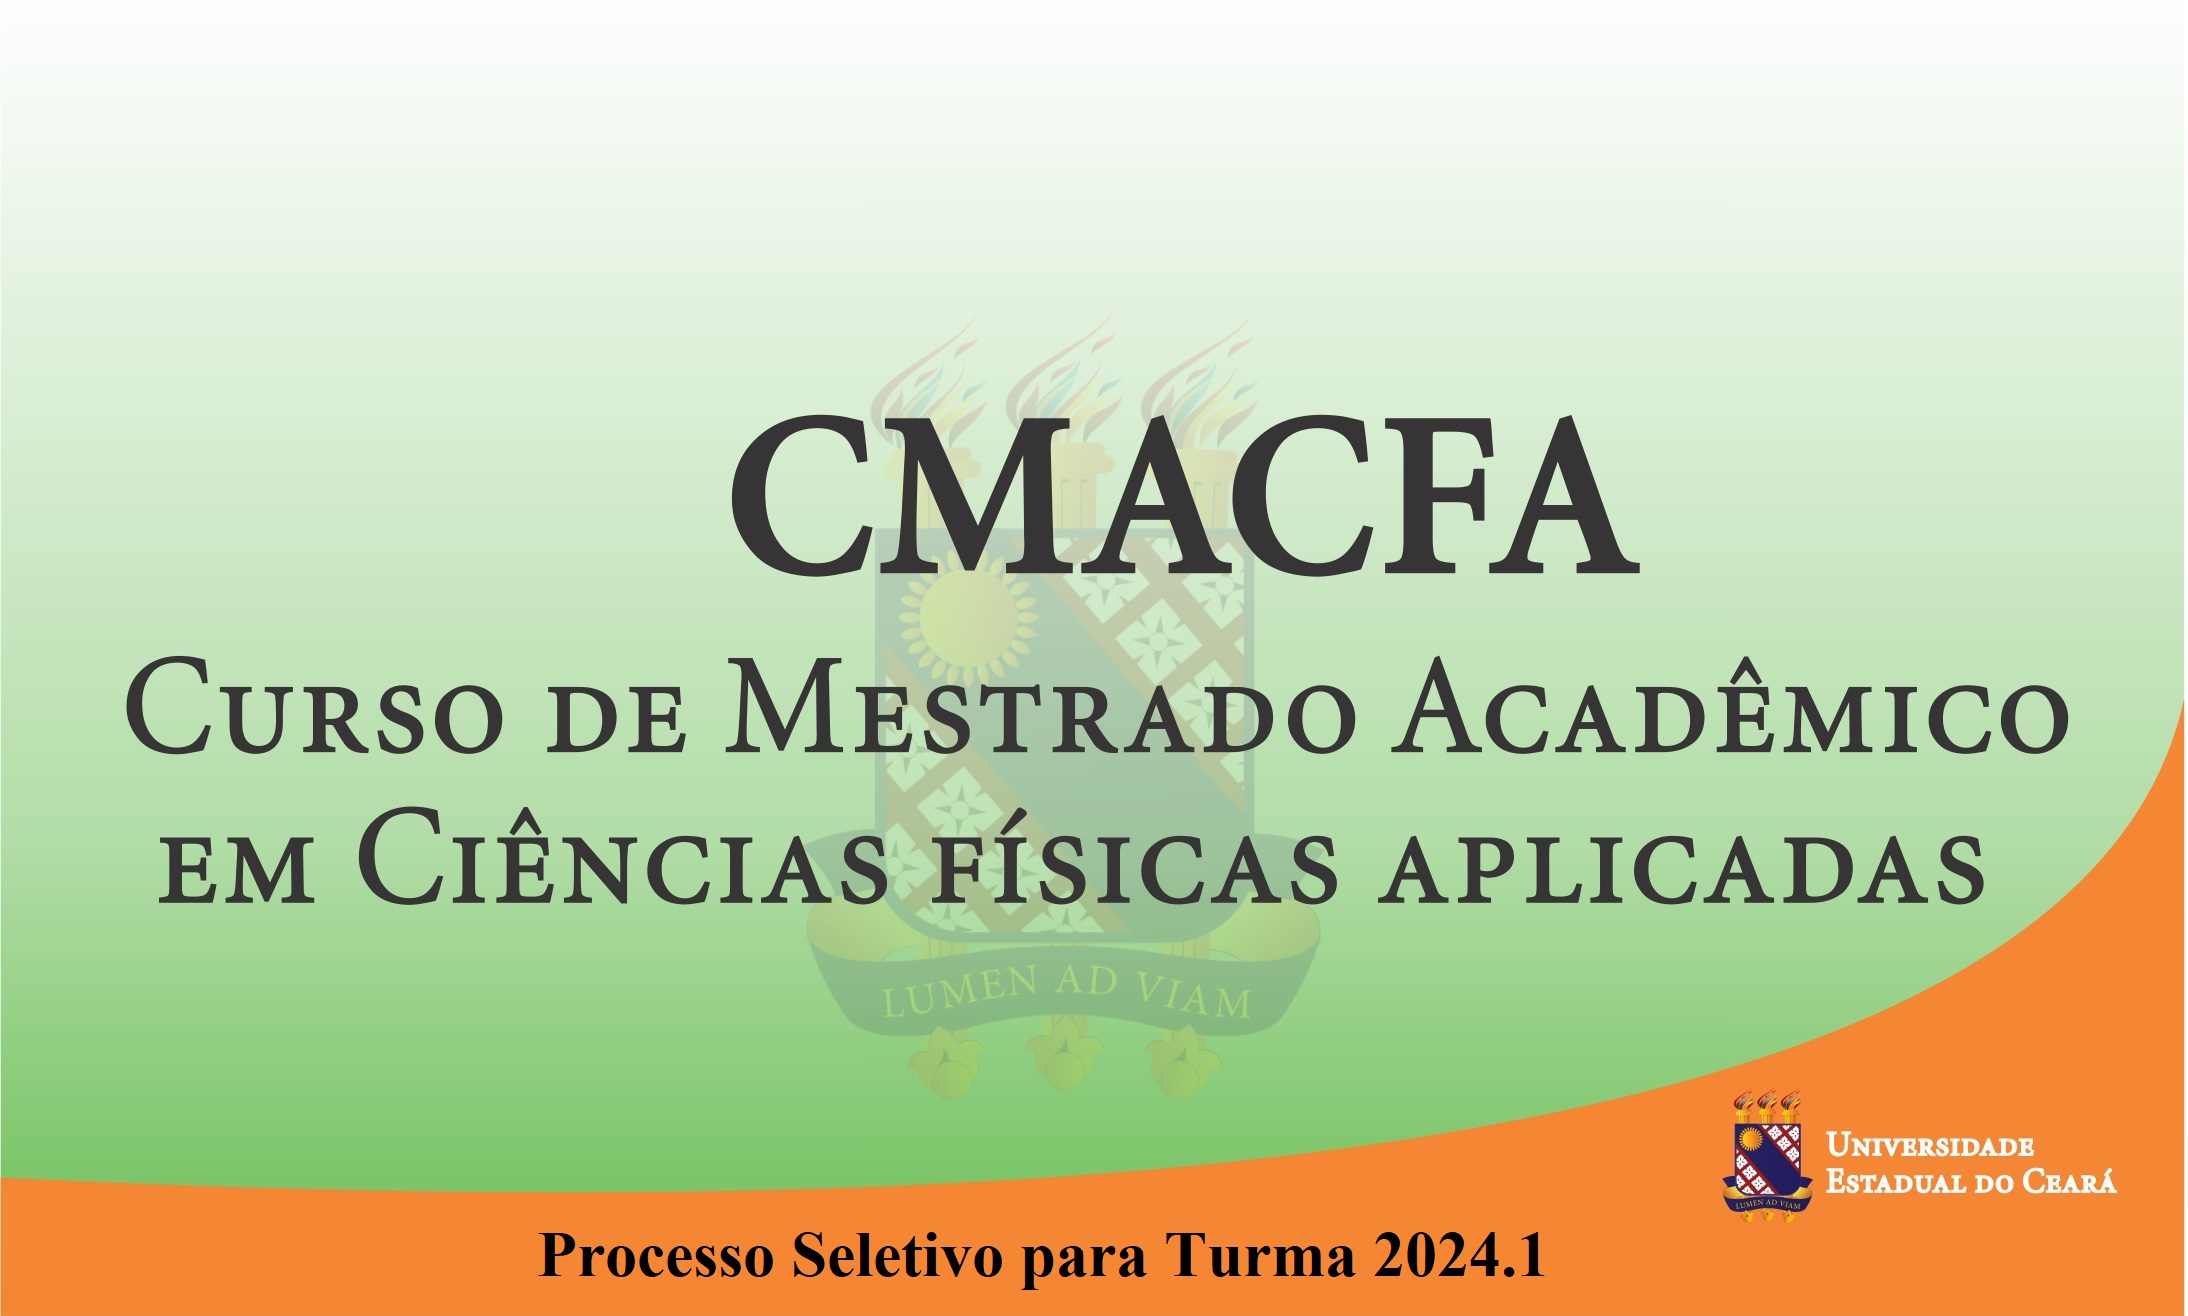 Processo Seletivo – Turma 2024.1: Curso de Mestrado Acadêmico em Ciências Físicas Aplicadas (CMACFA)